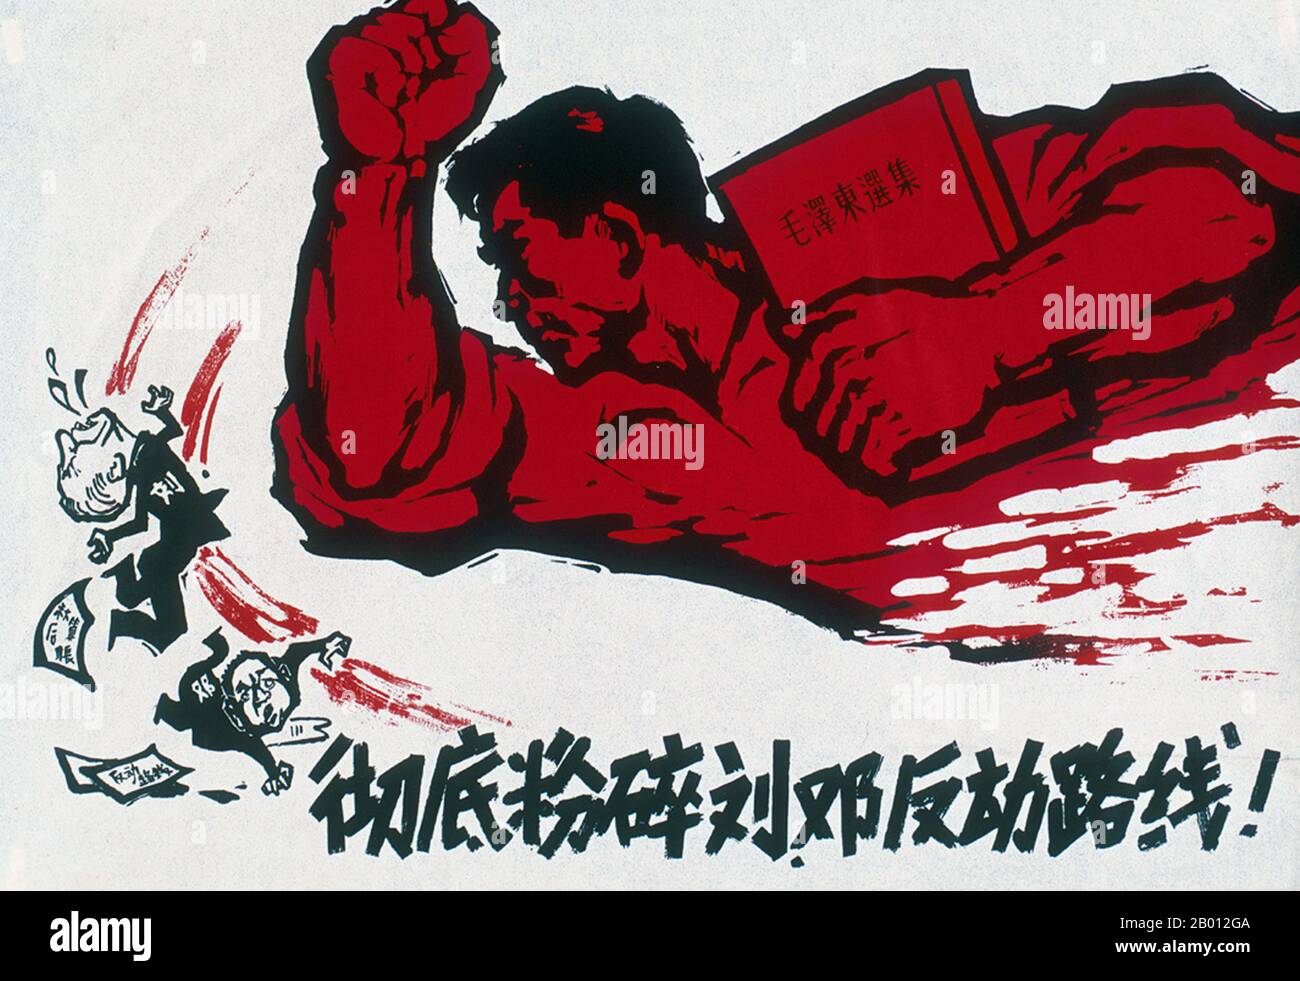 China: 'Zertrümmern Sie die Liu-Deng-konterrevolutionäre Linie vollständig'. Kulturrevolution Plakatkunst, 1967. Liu Shaoqi (Liu Shao-ch'i, 24. November 1898 – 12. November 1969) war ein Revolutionär, Staatsmann und Theoretiker. Von 1959 bis 1968 war er Vorsitzender der Volksrepublik China, Chinas Staatsoberhaupt, während dessen er die Politik des wirtschaftlichen Wiederaufbaus in China umsetzte. Deng Xiaoping (Teng Hsiao-p'ing; 22. August 1904 – 19. Februar 1997) war Politiker, Staatsmann, Theoretiker und Diplomat. Als Führer der Kommunistischen Partei war Deng ein Reformer, der China zu einer Marktwirtschaft führte. Stockfoto